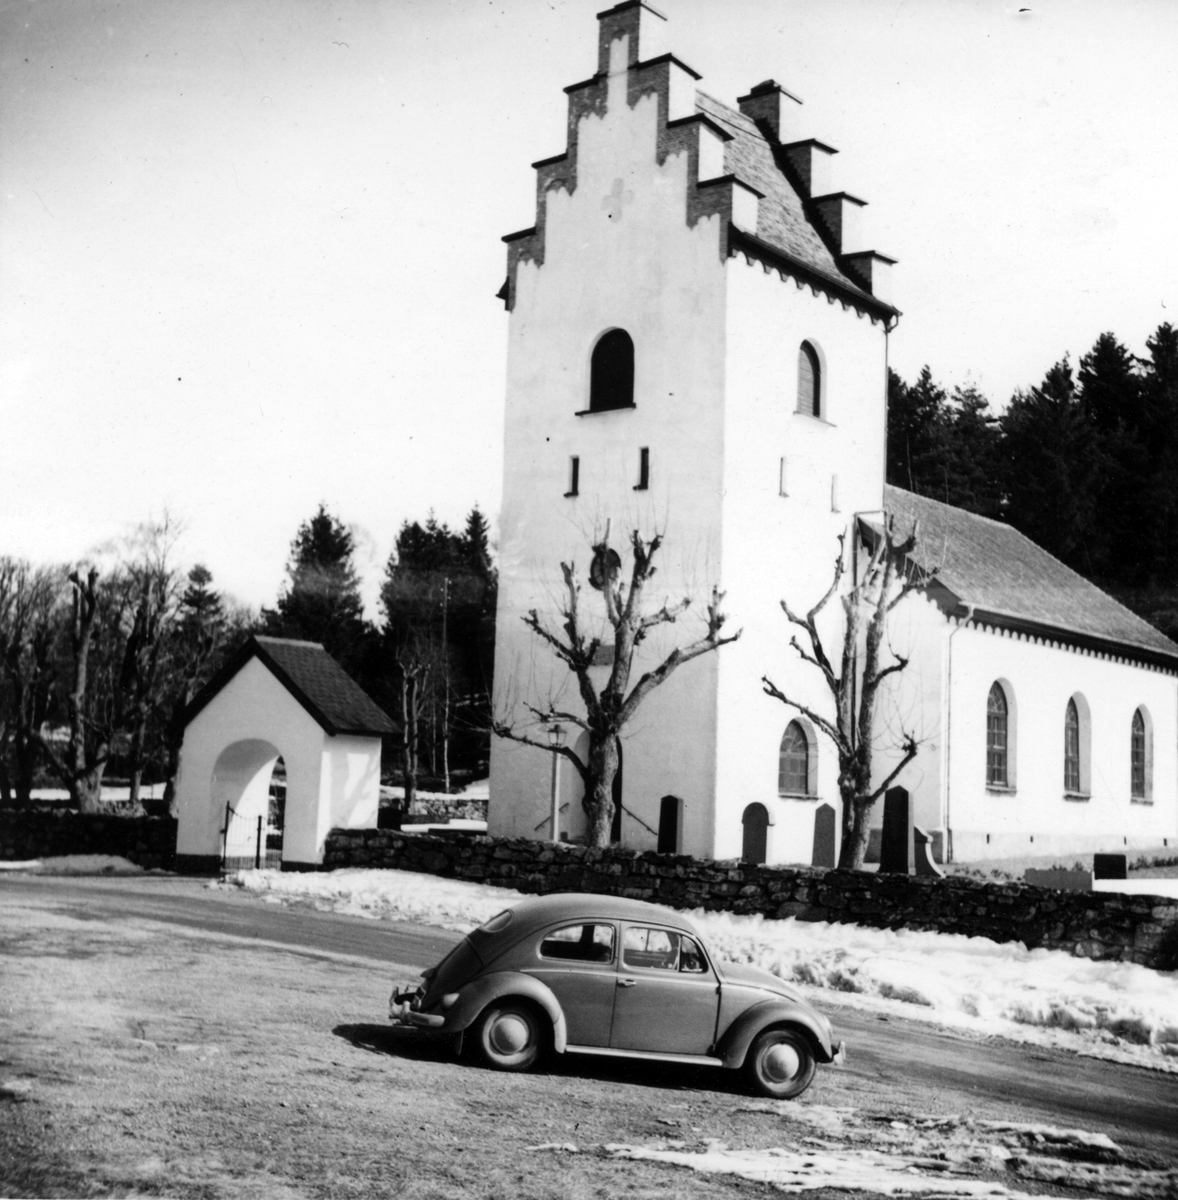 Text till bilden:"Grinneröds kyrka".